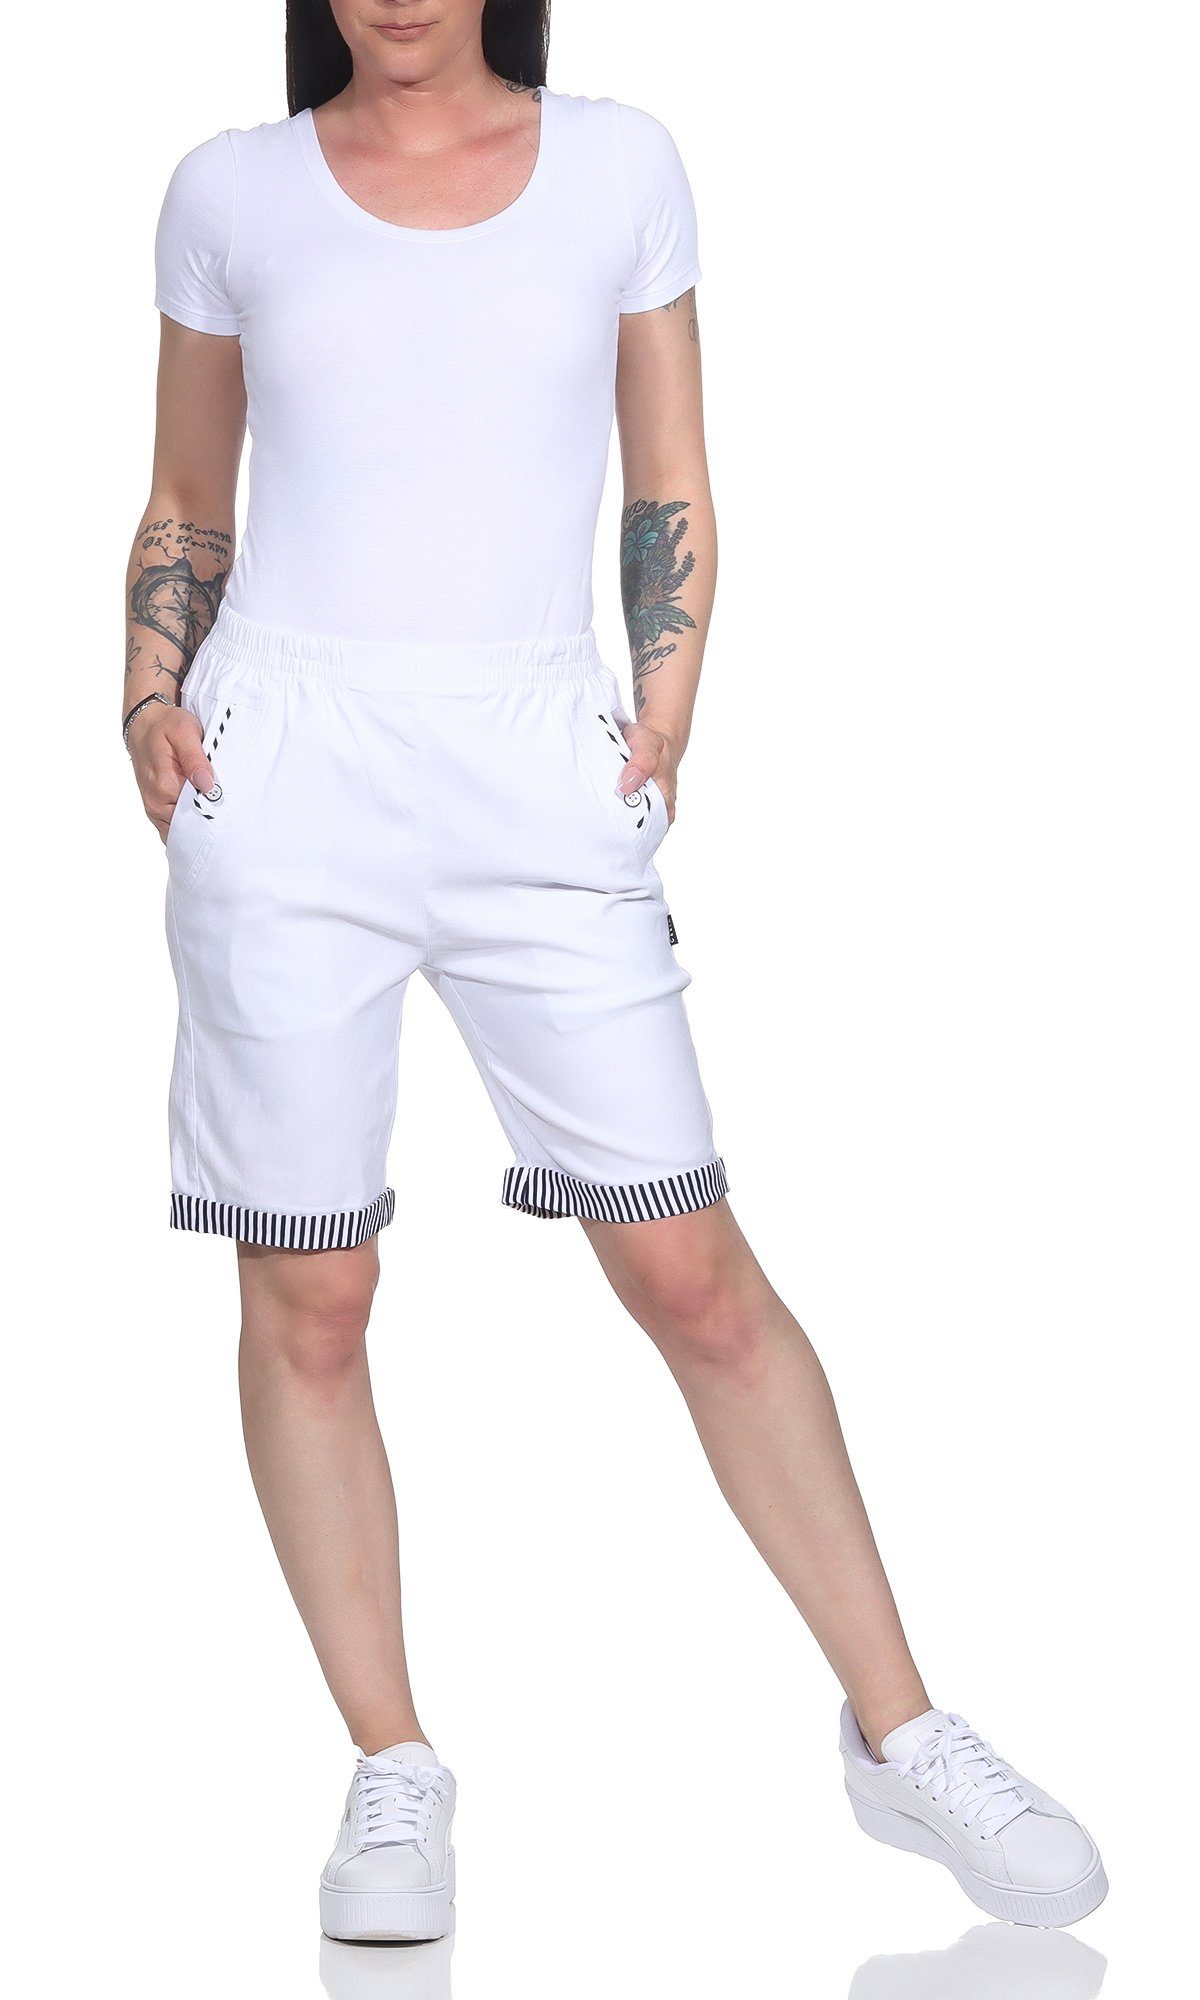 Strandbermuda Bund, Damenmode maritimen Shorts mit großen auch Shorts in mit Aurela Details Damen erhältlich, Größen Weiß Bermuda Sommer Maritime elastischem